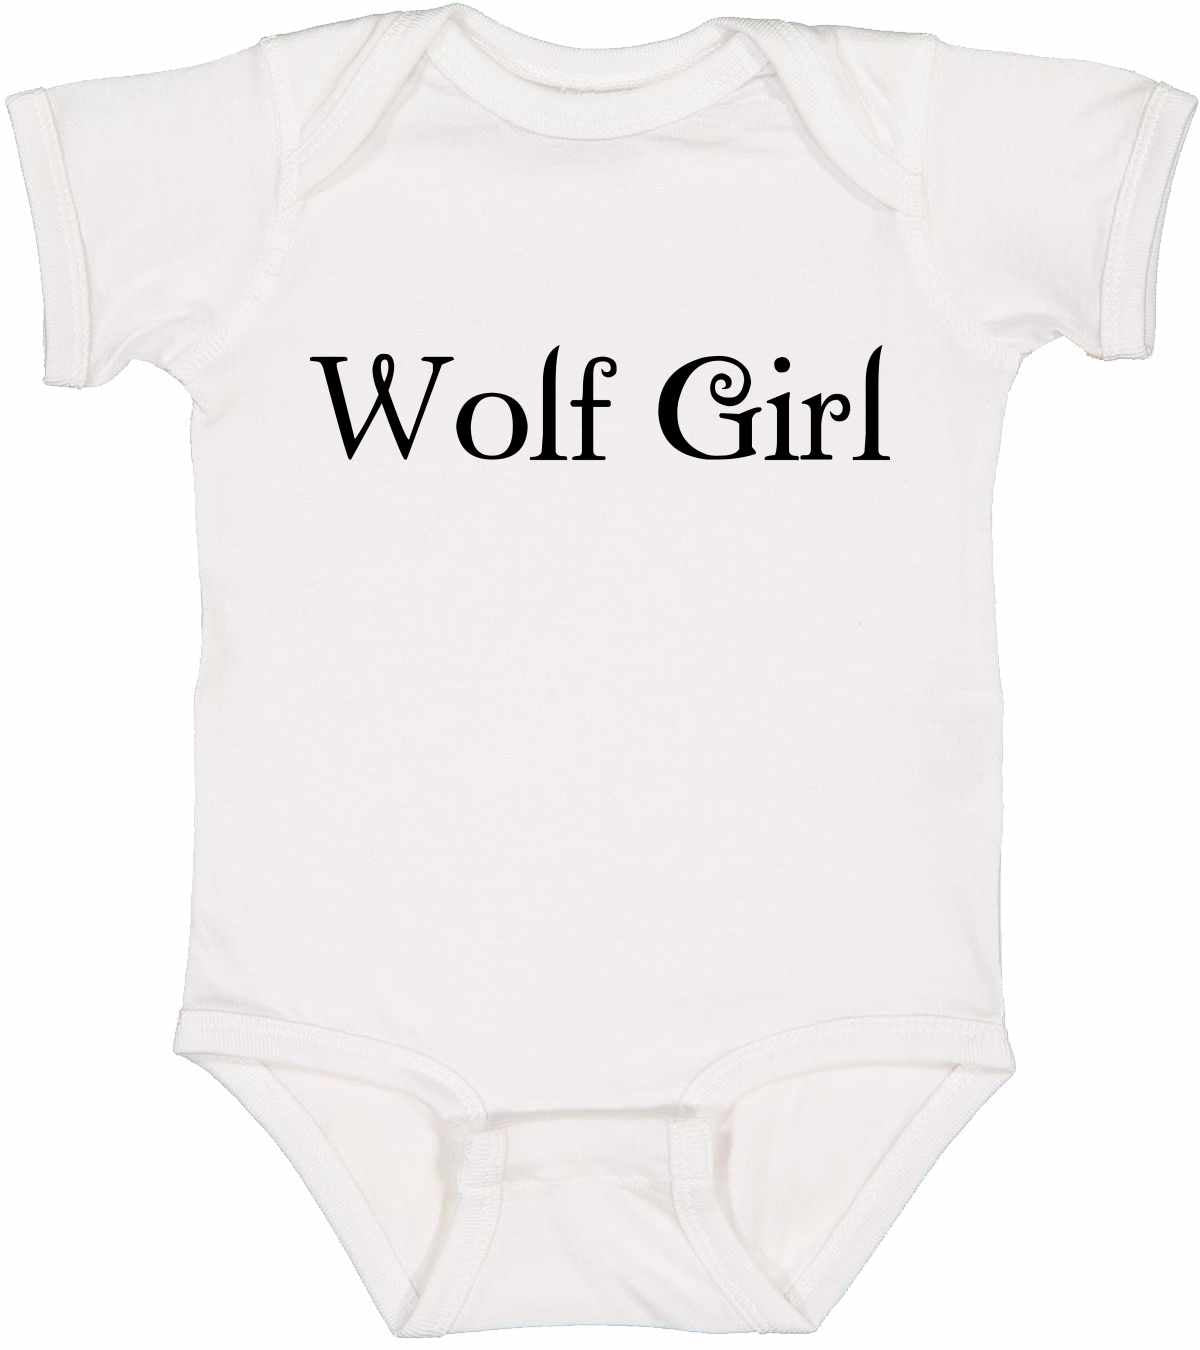 Wolf Girl on Infant BodySuit (#526-10)